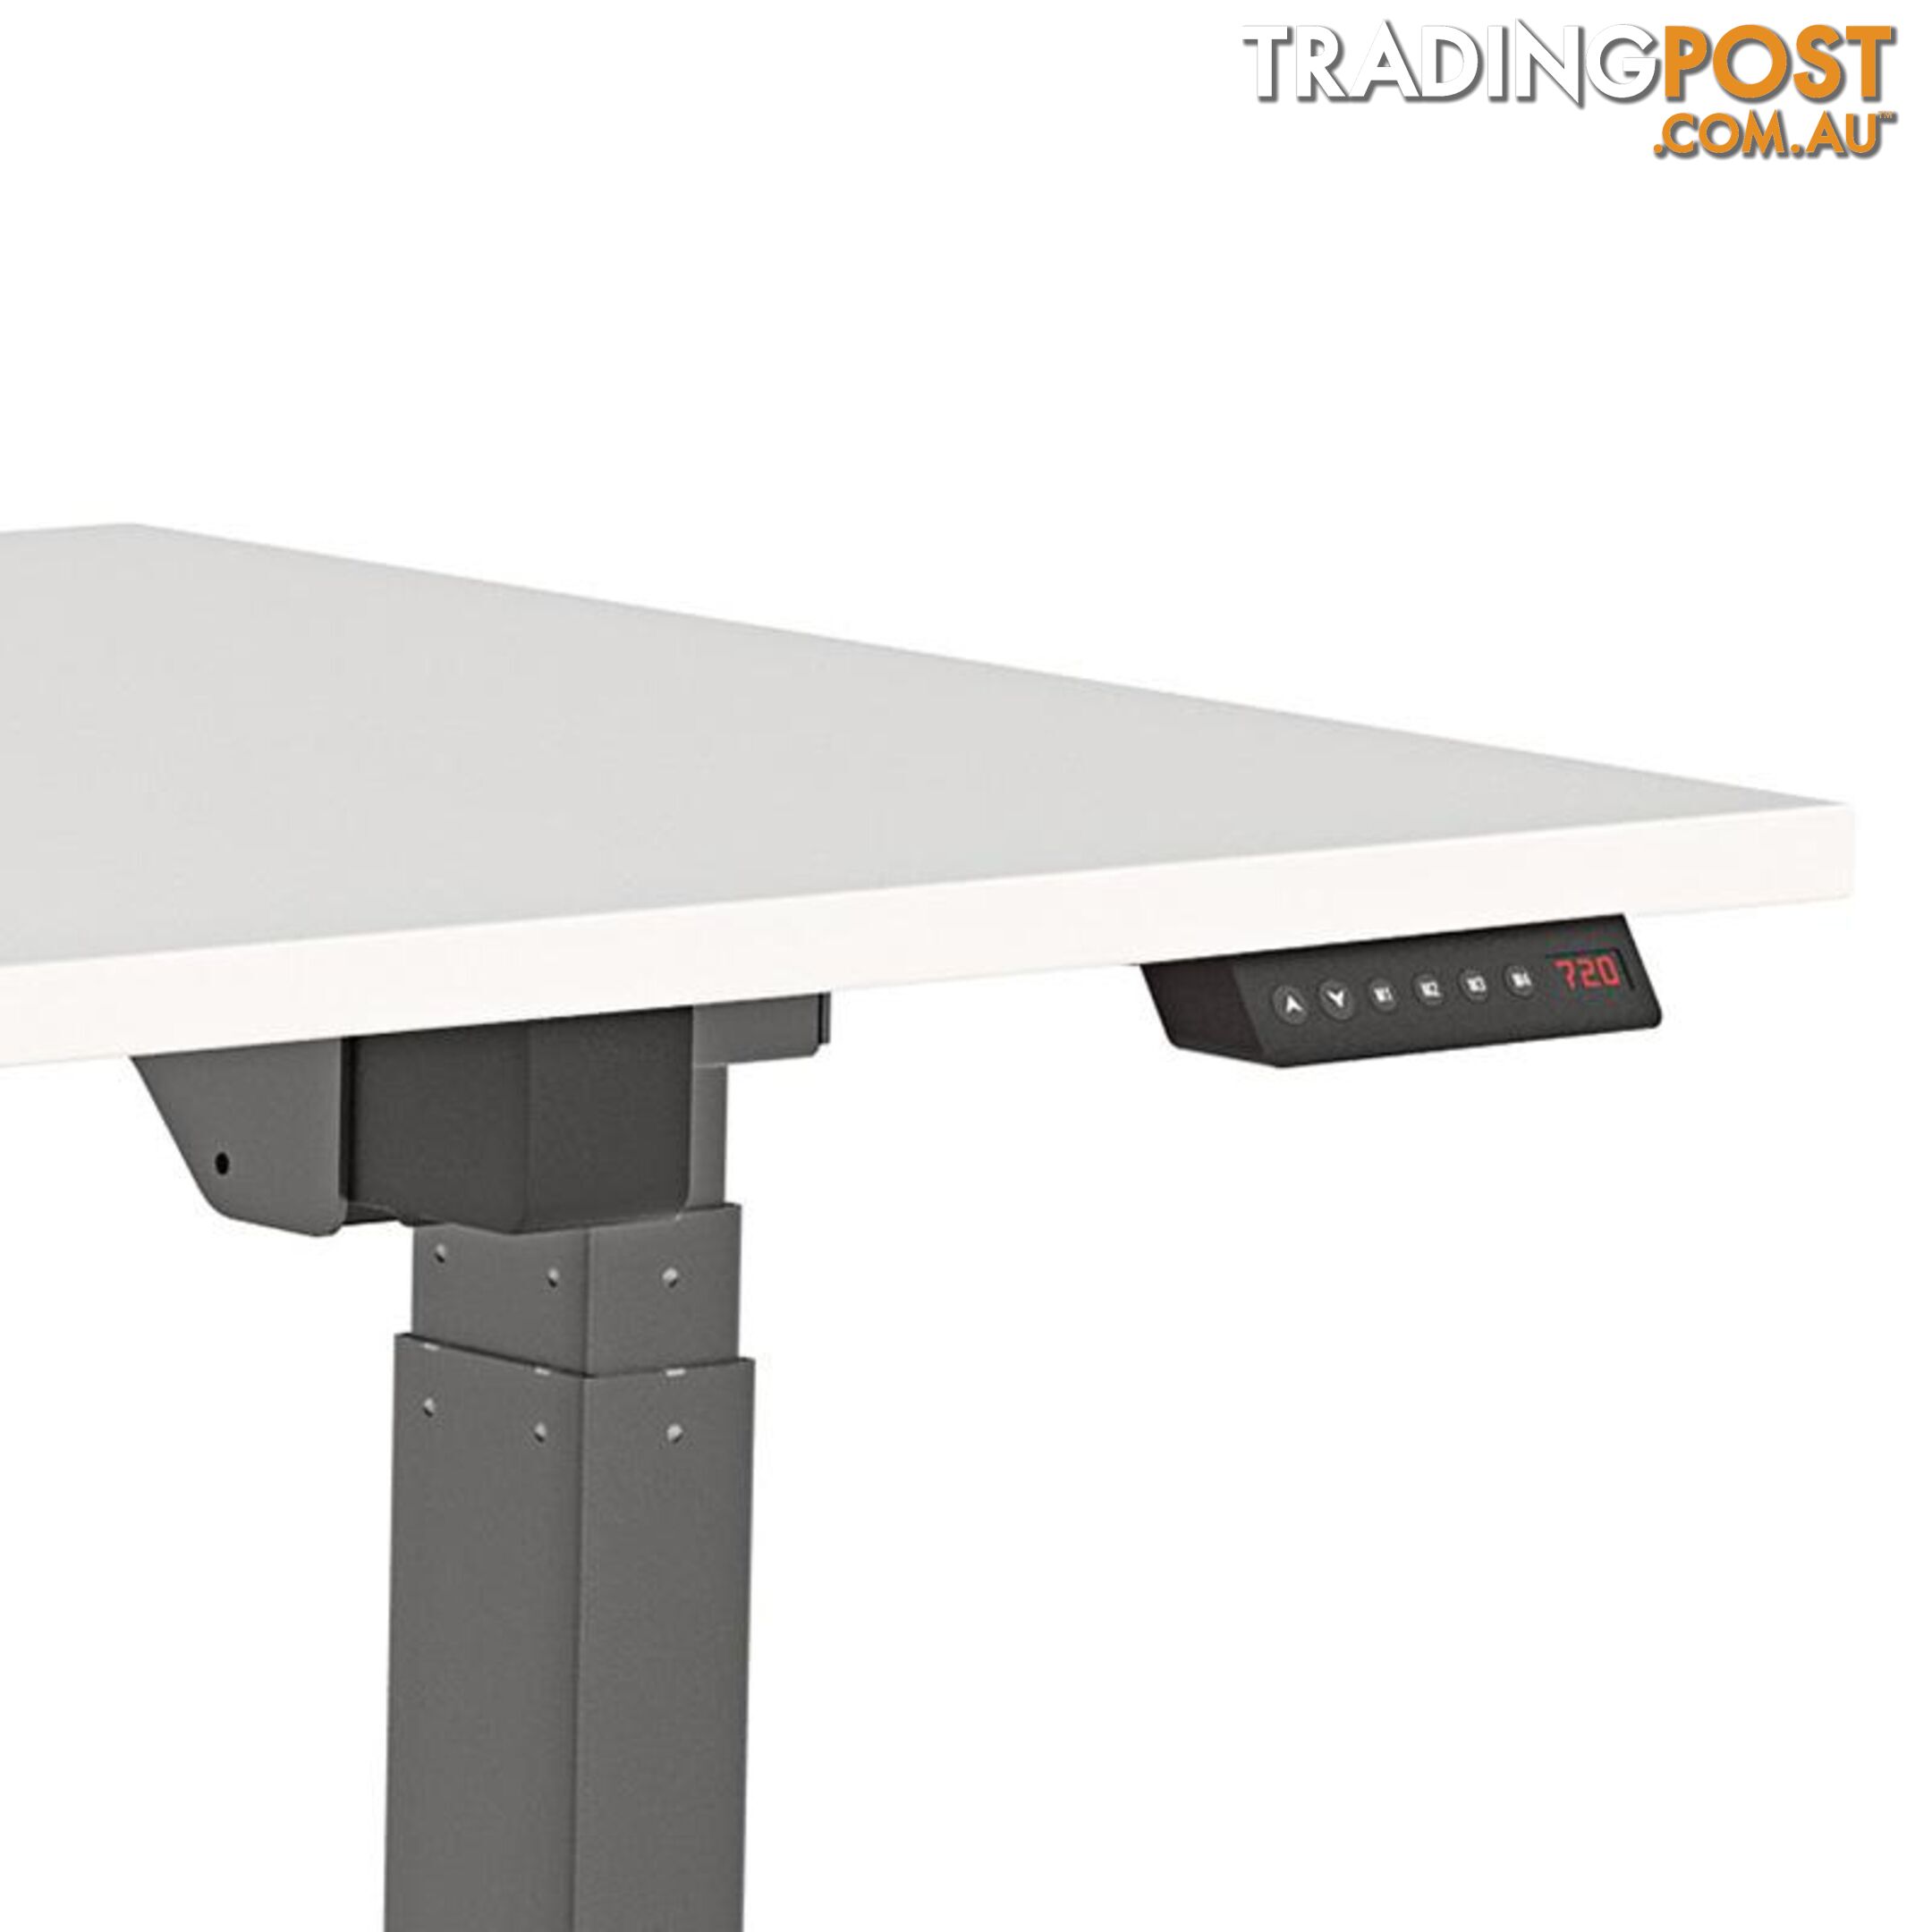 AGILE PRO Electric 2 Column Sit Standing Desk - 1200mm to 1800mm - Oak & Black - OG_AGE2SSD141